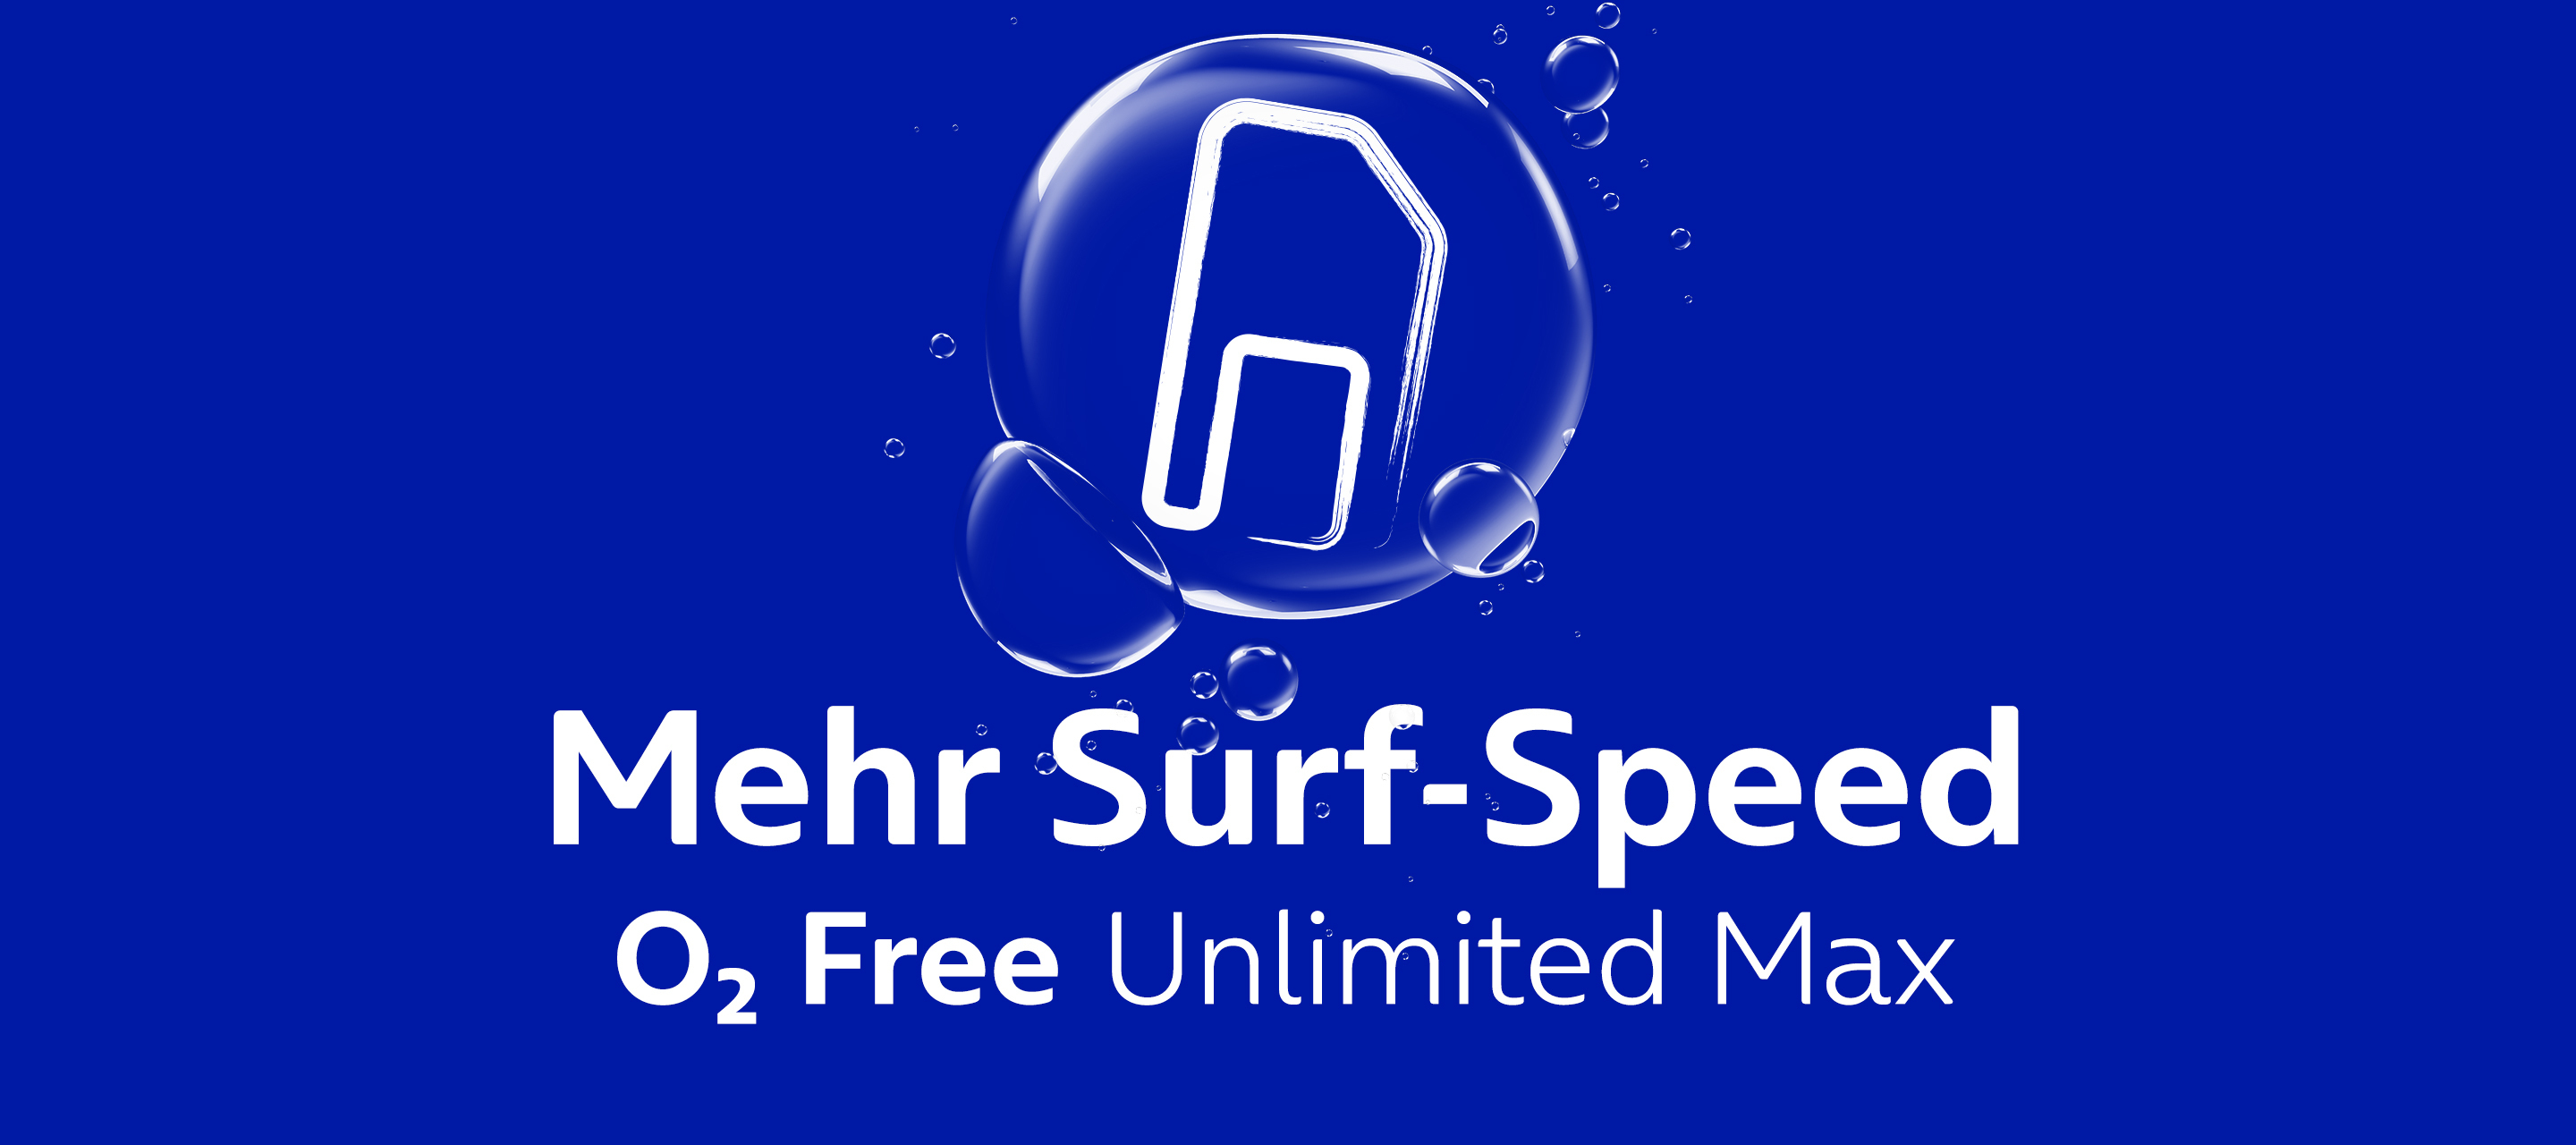 Tarif-Upgrade: Mit dem O₂ Free Unlimited Max und O₂ my Data noch schneller surfen